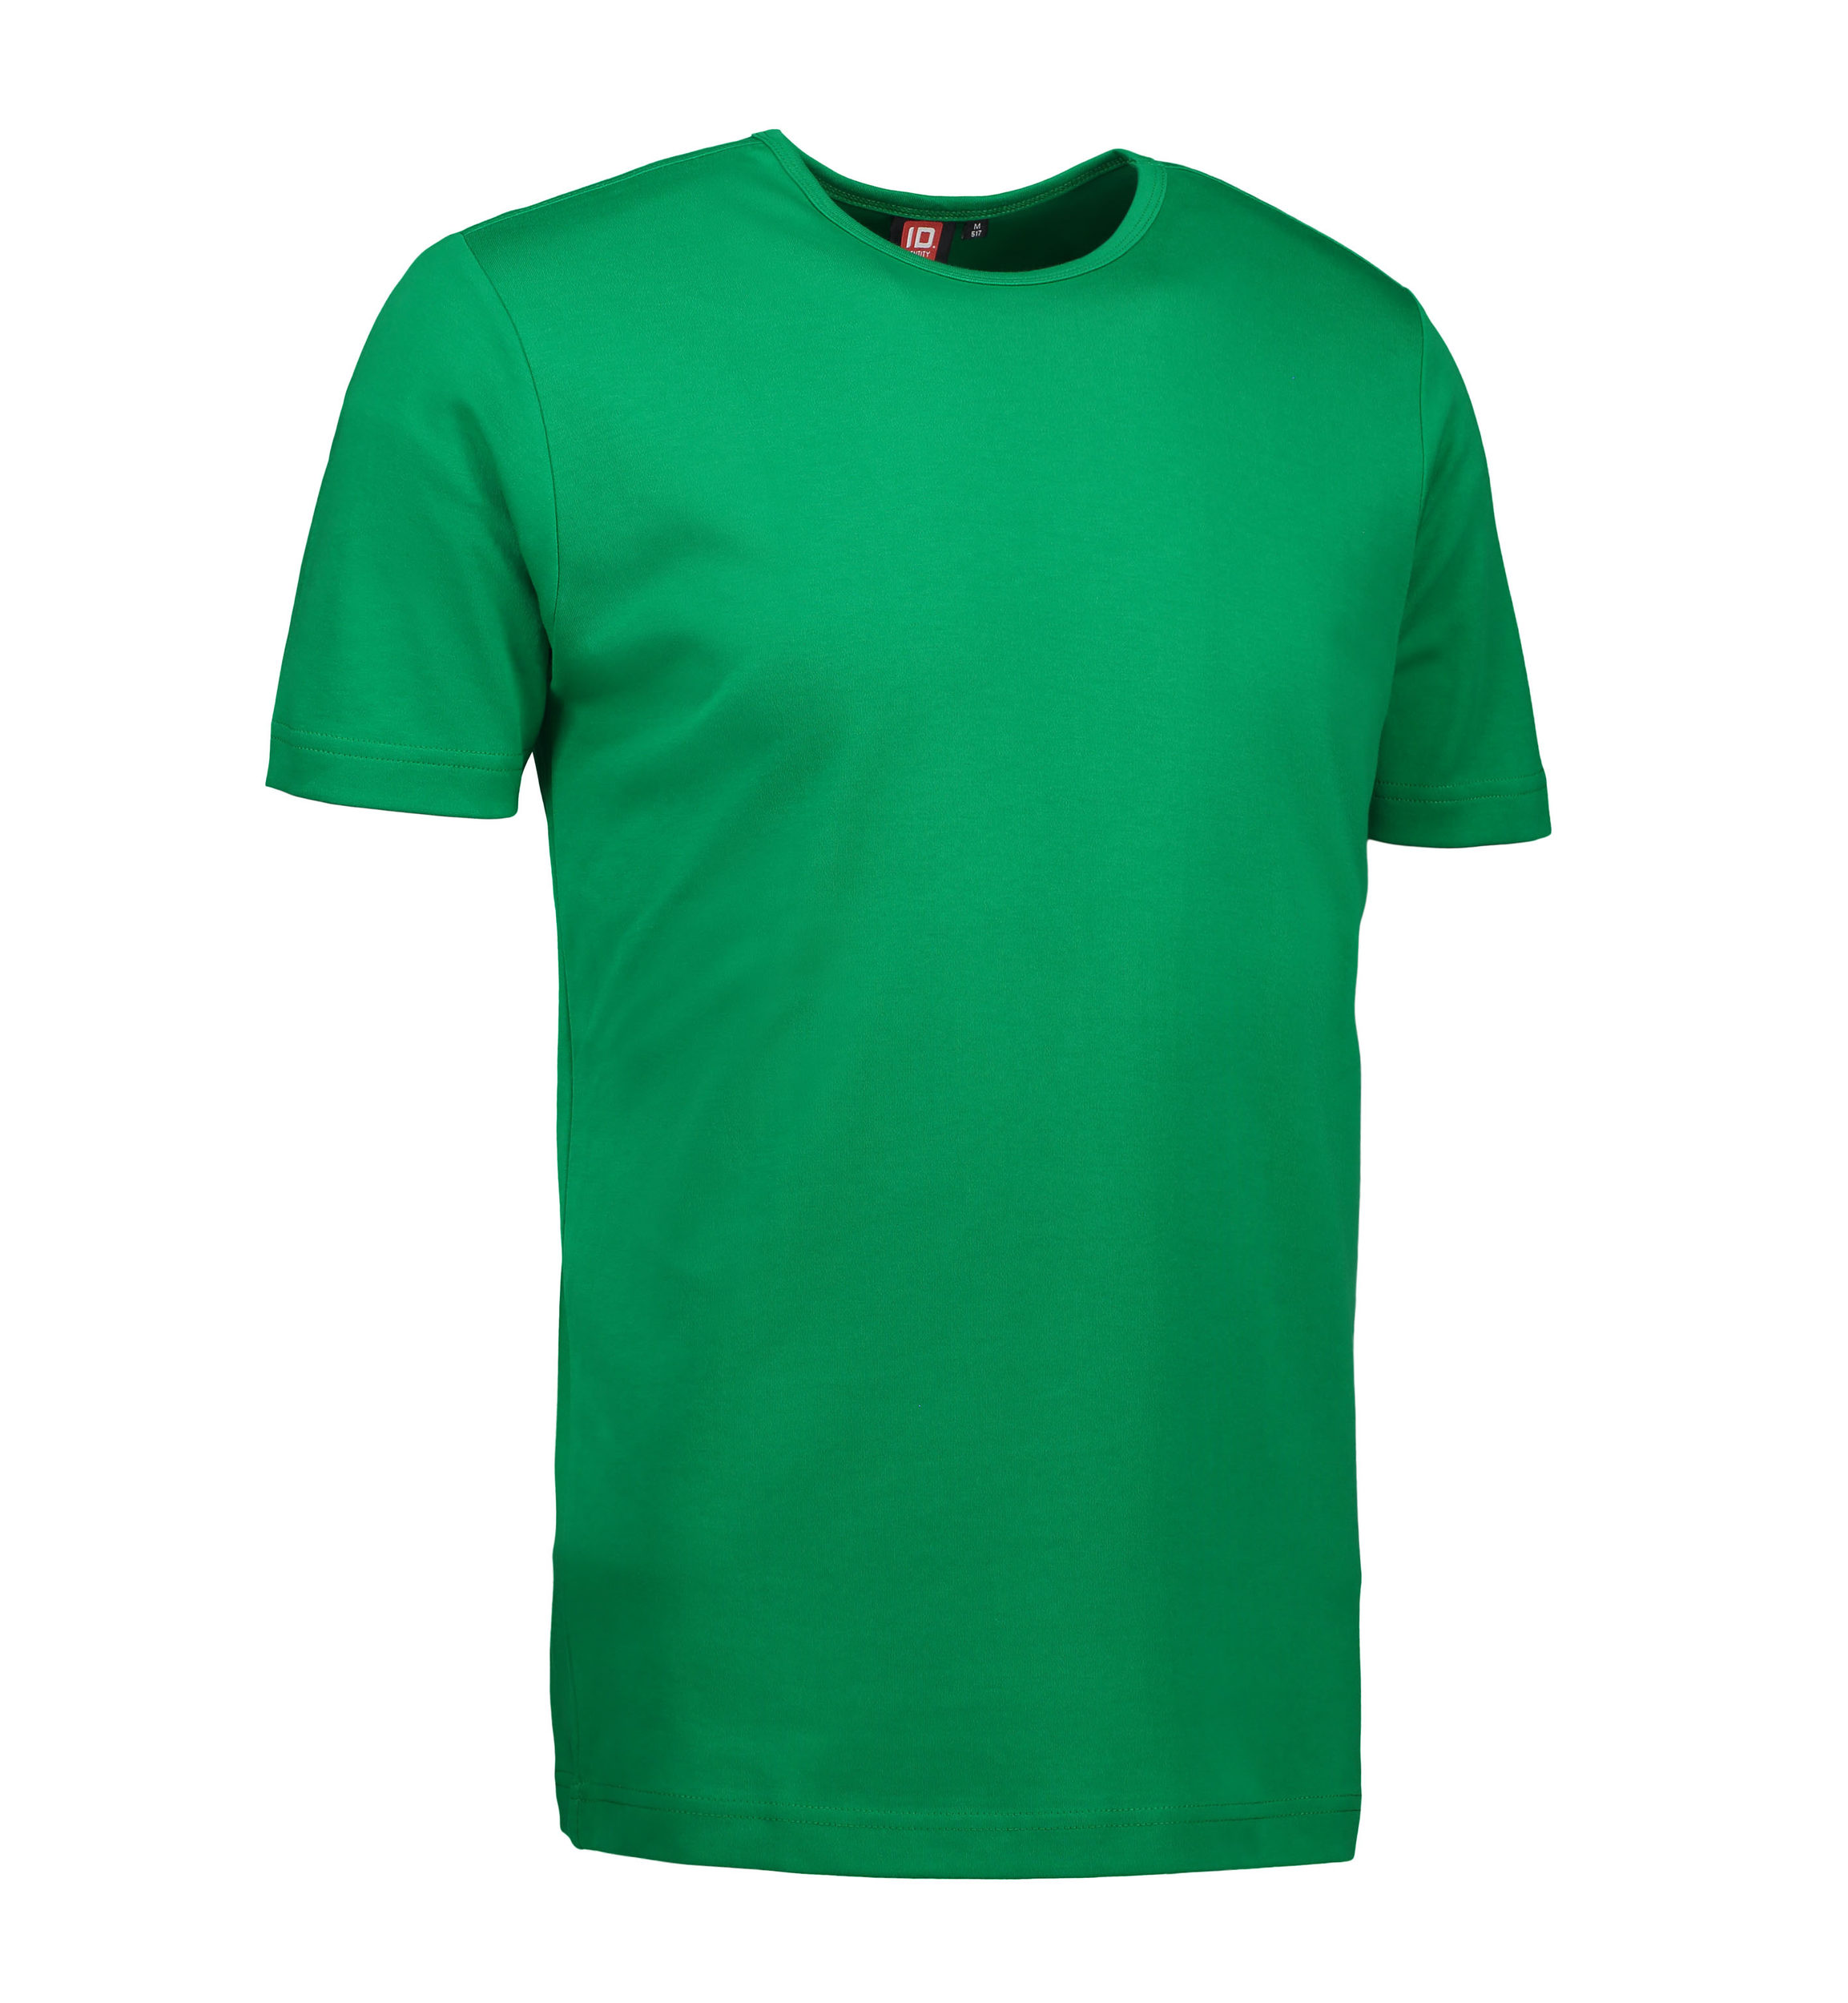 Billede af Grøn t-shirt med rund hals til mænd - XL